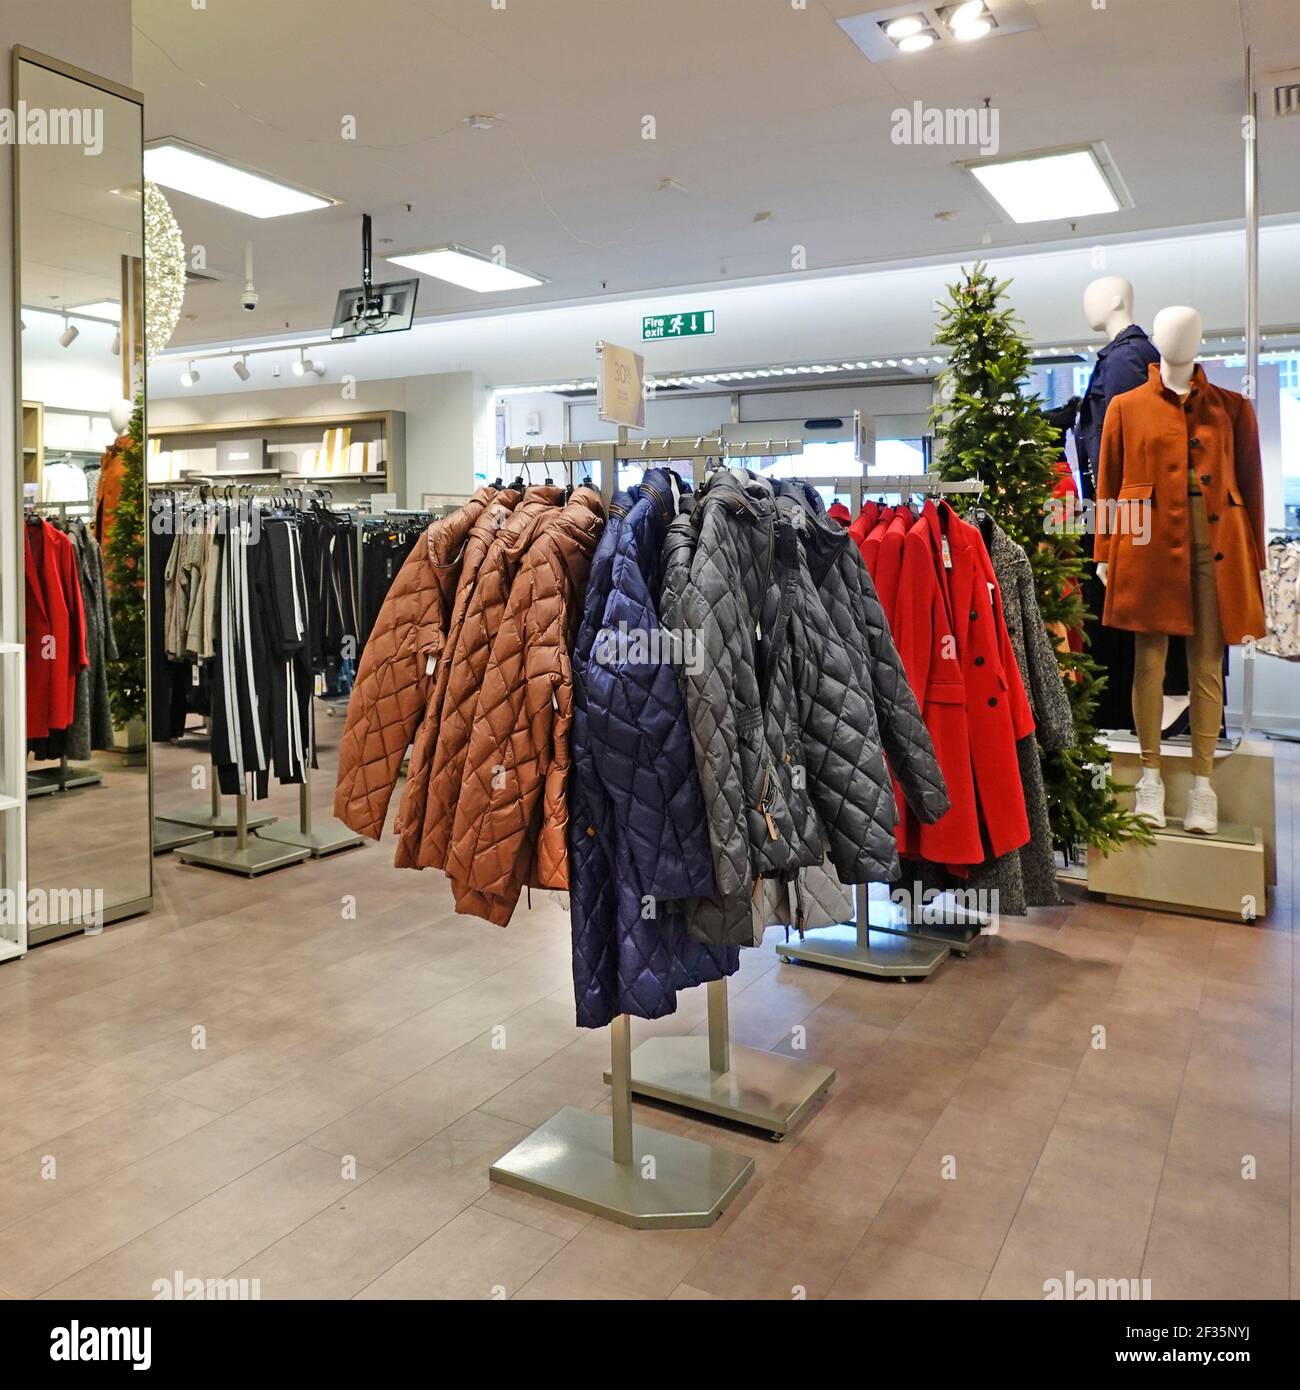 Vue de l'intérieur Marks and Spencer magasin de détail femmes mode Présenter les manteaux d'hiver M&S suspendus sur les rails pour inspection et Acheter Angleterre Royaume-Uni Banque D'Images